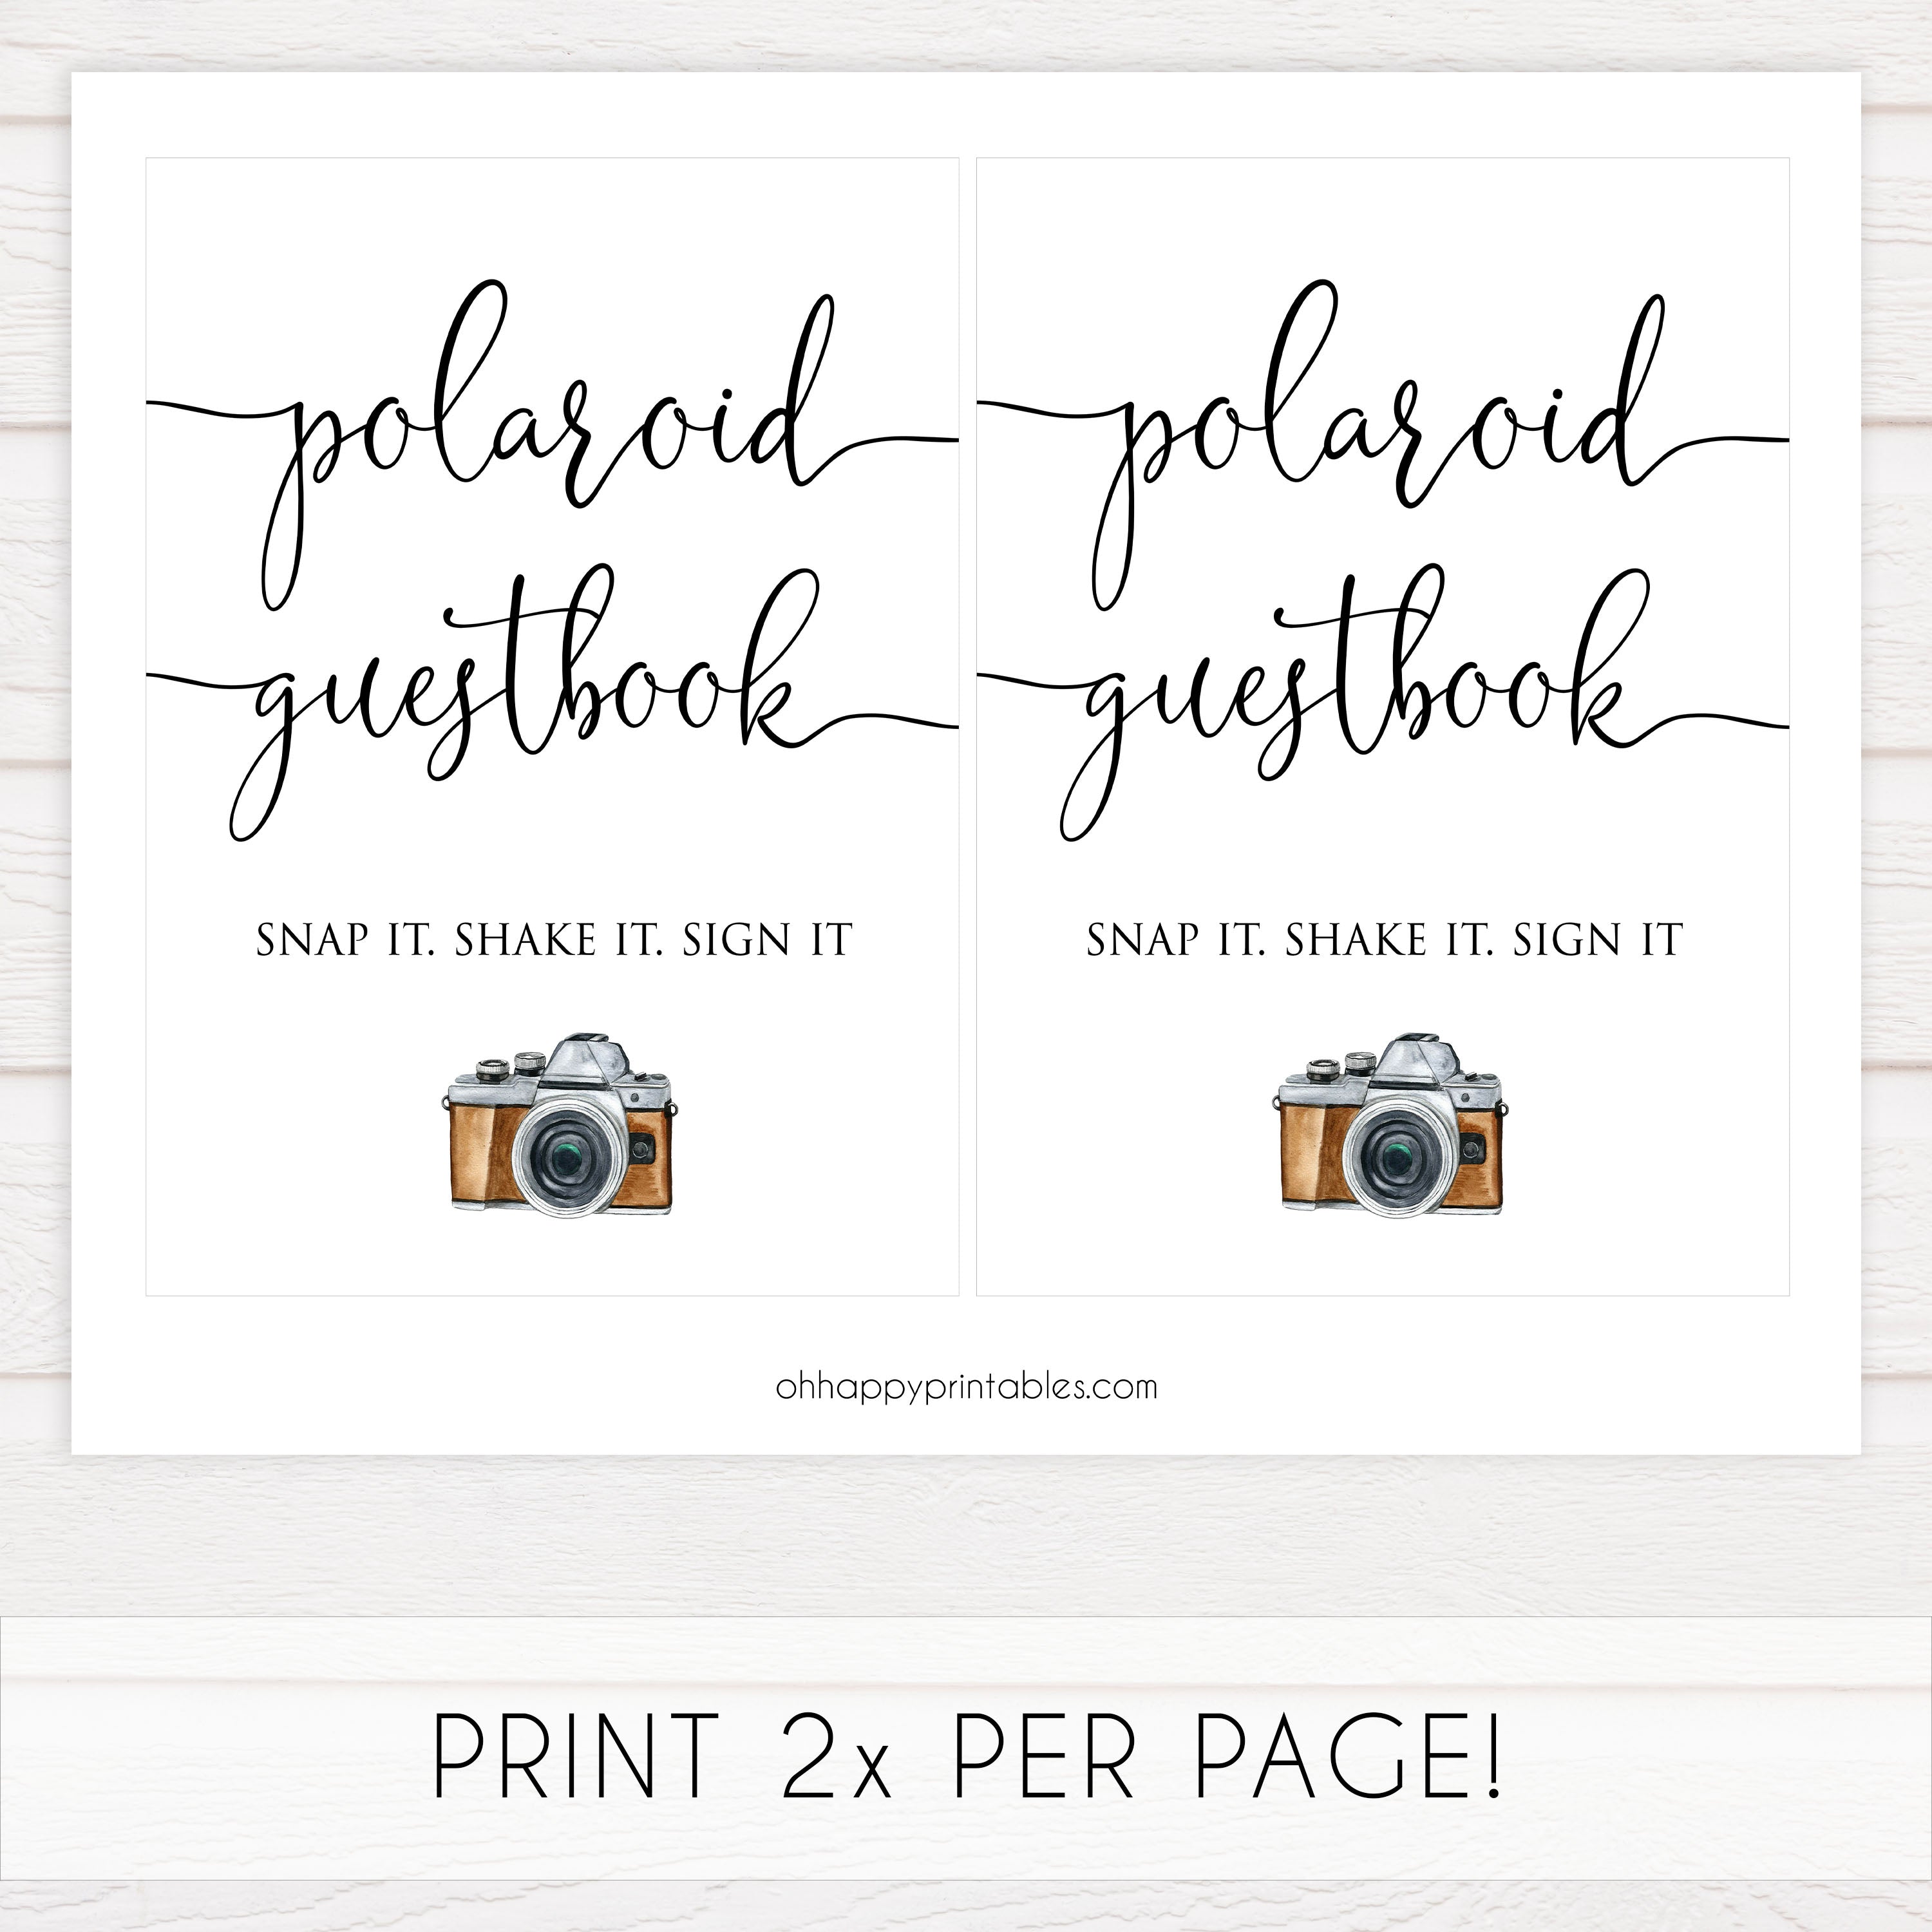 Polaroid Guestbook Printable, Polaroid Guest Book Printable, Polaroid  Wedding Guest Book, Polaroid Gue…